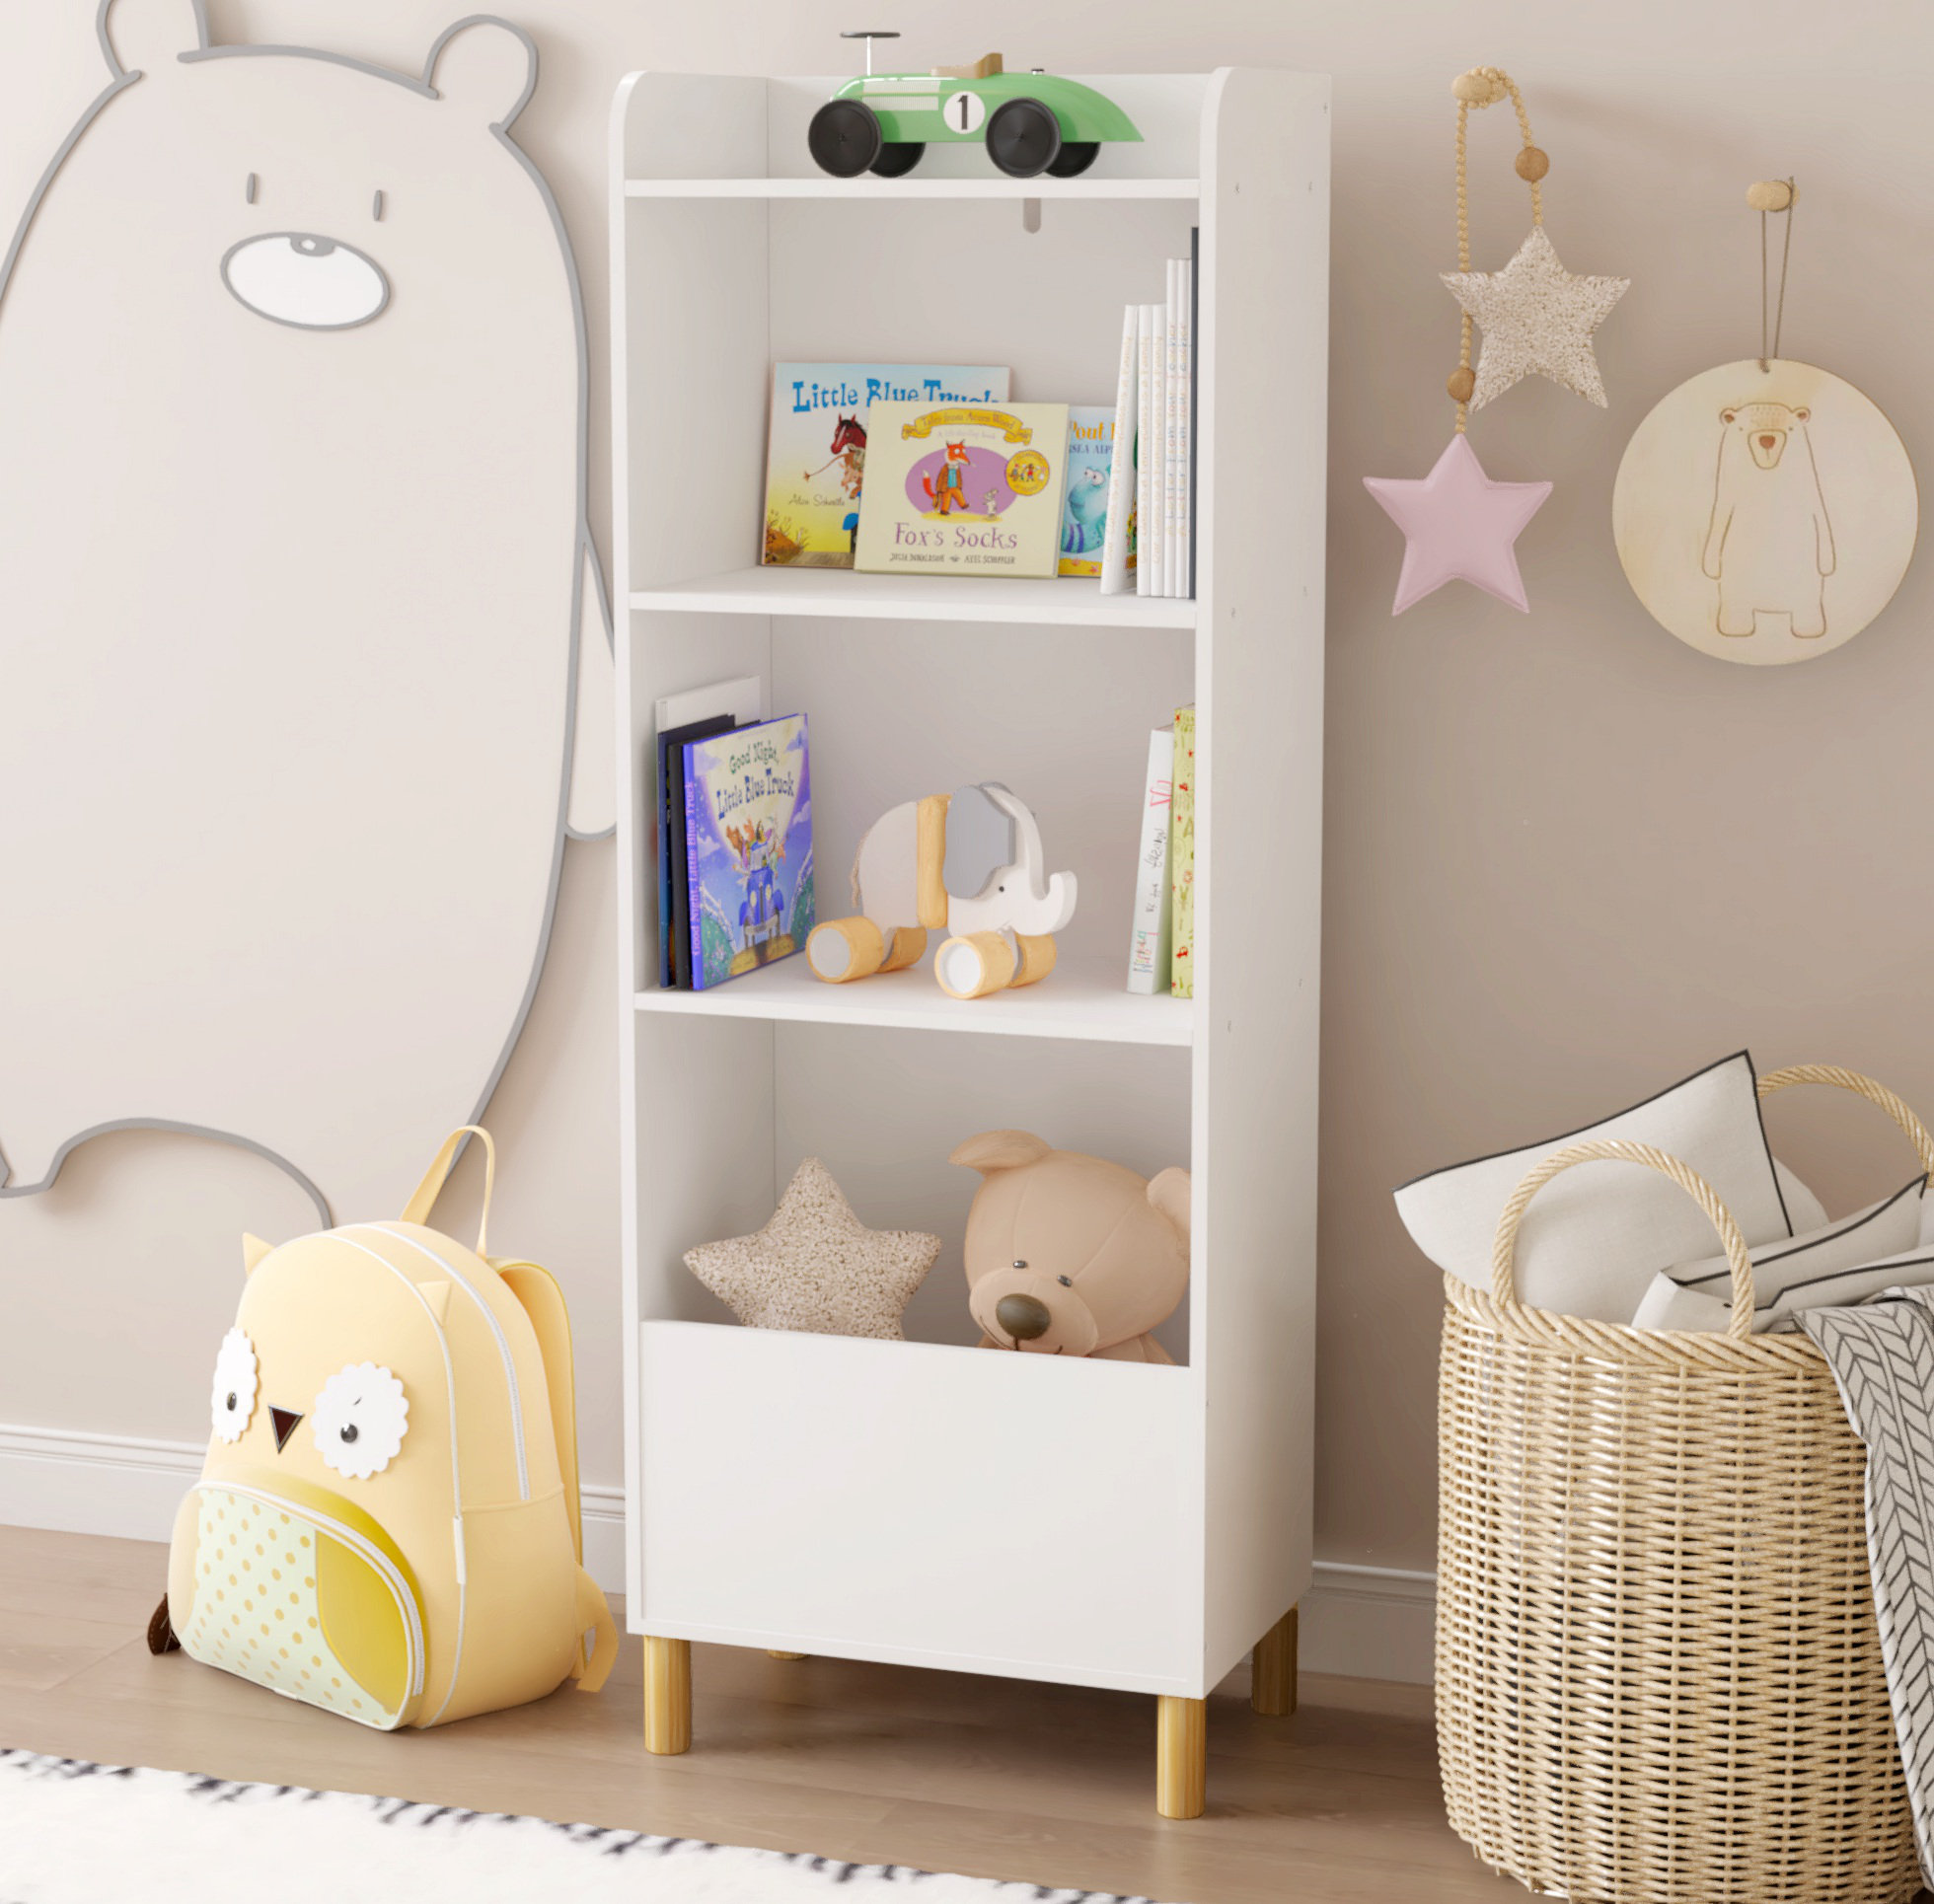 Kids Toy and Book Organizer Children Wooden Storage Cabinet with